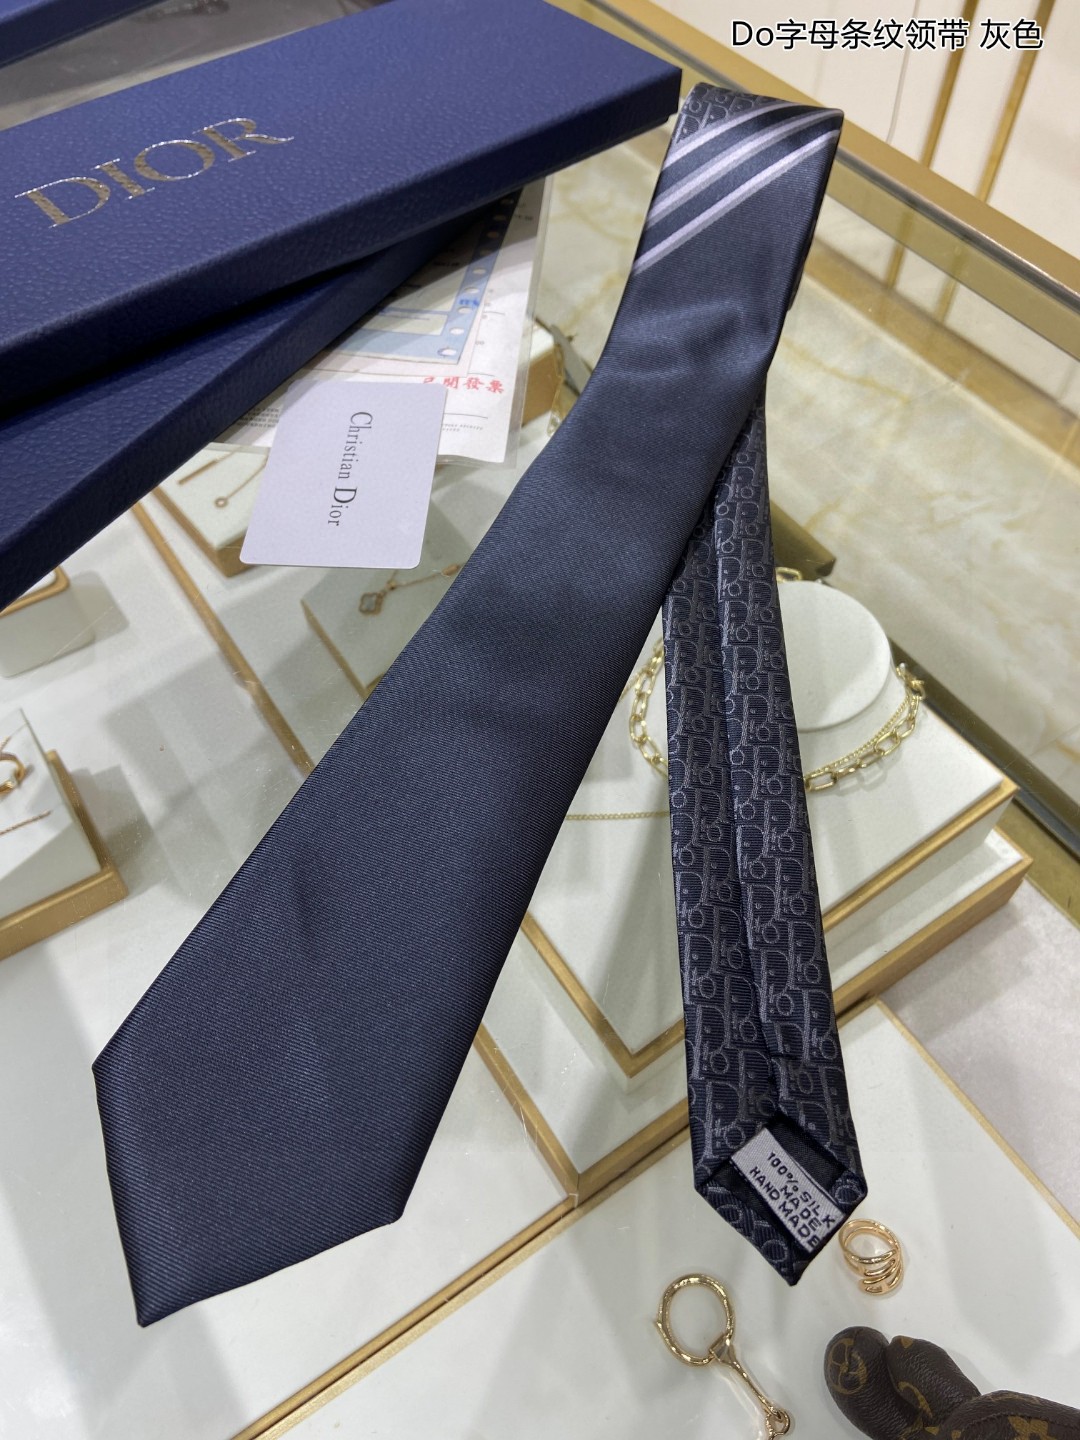 爆款到Do家新款领带特价配盒子Dior男士Do字母条纹领带稀有展现精湛手工与时尚优雅的理想选择这款采用D